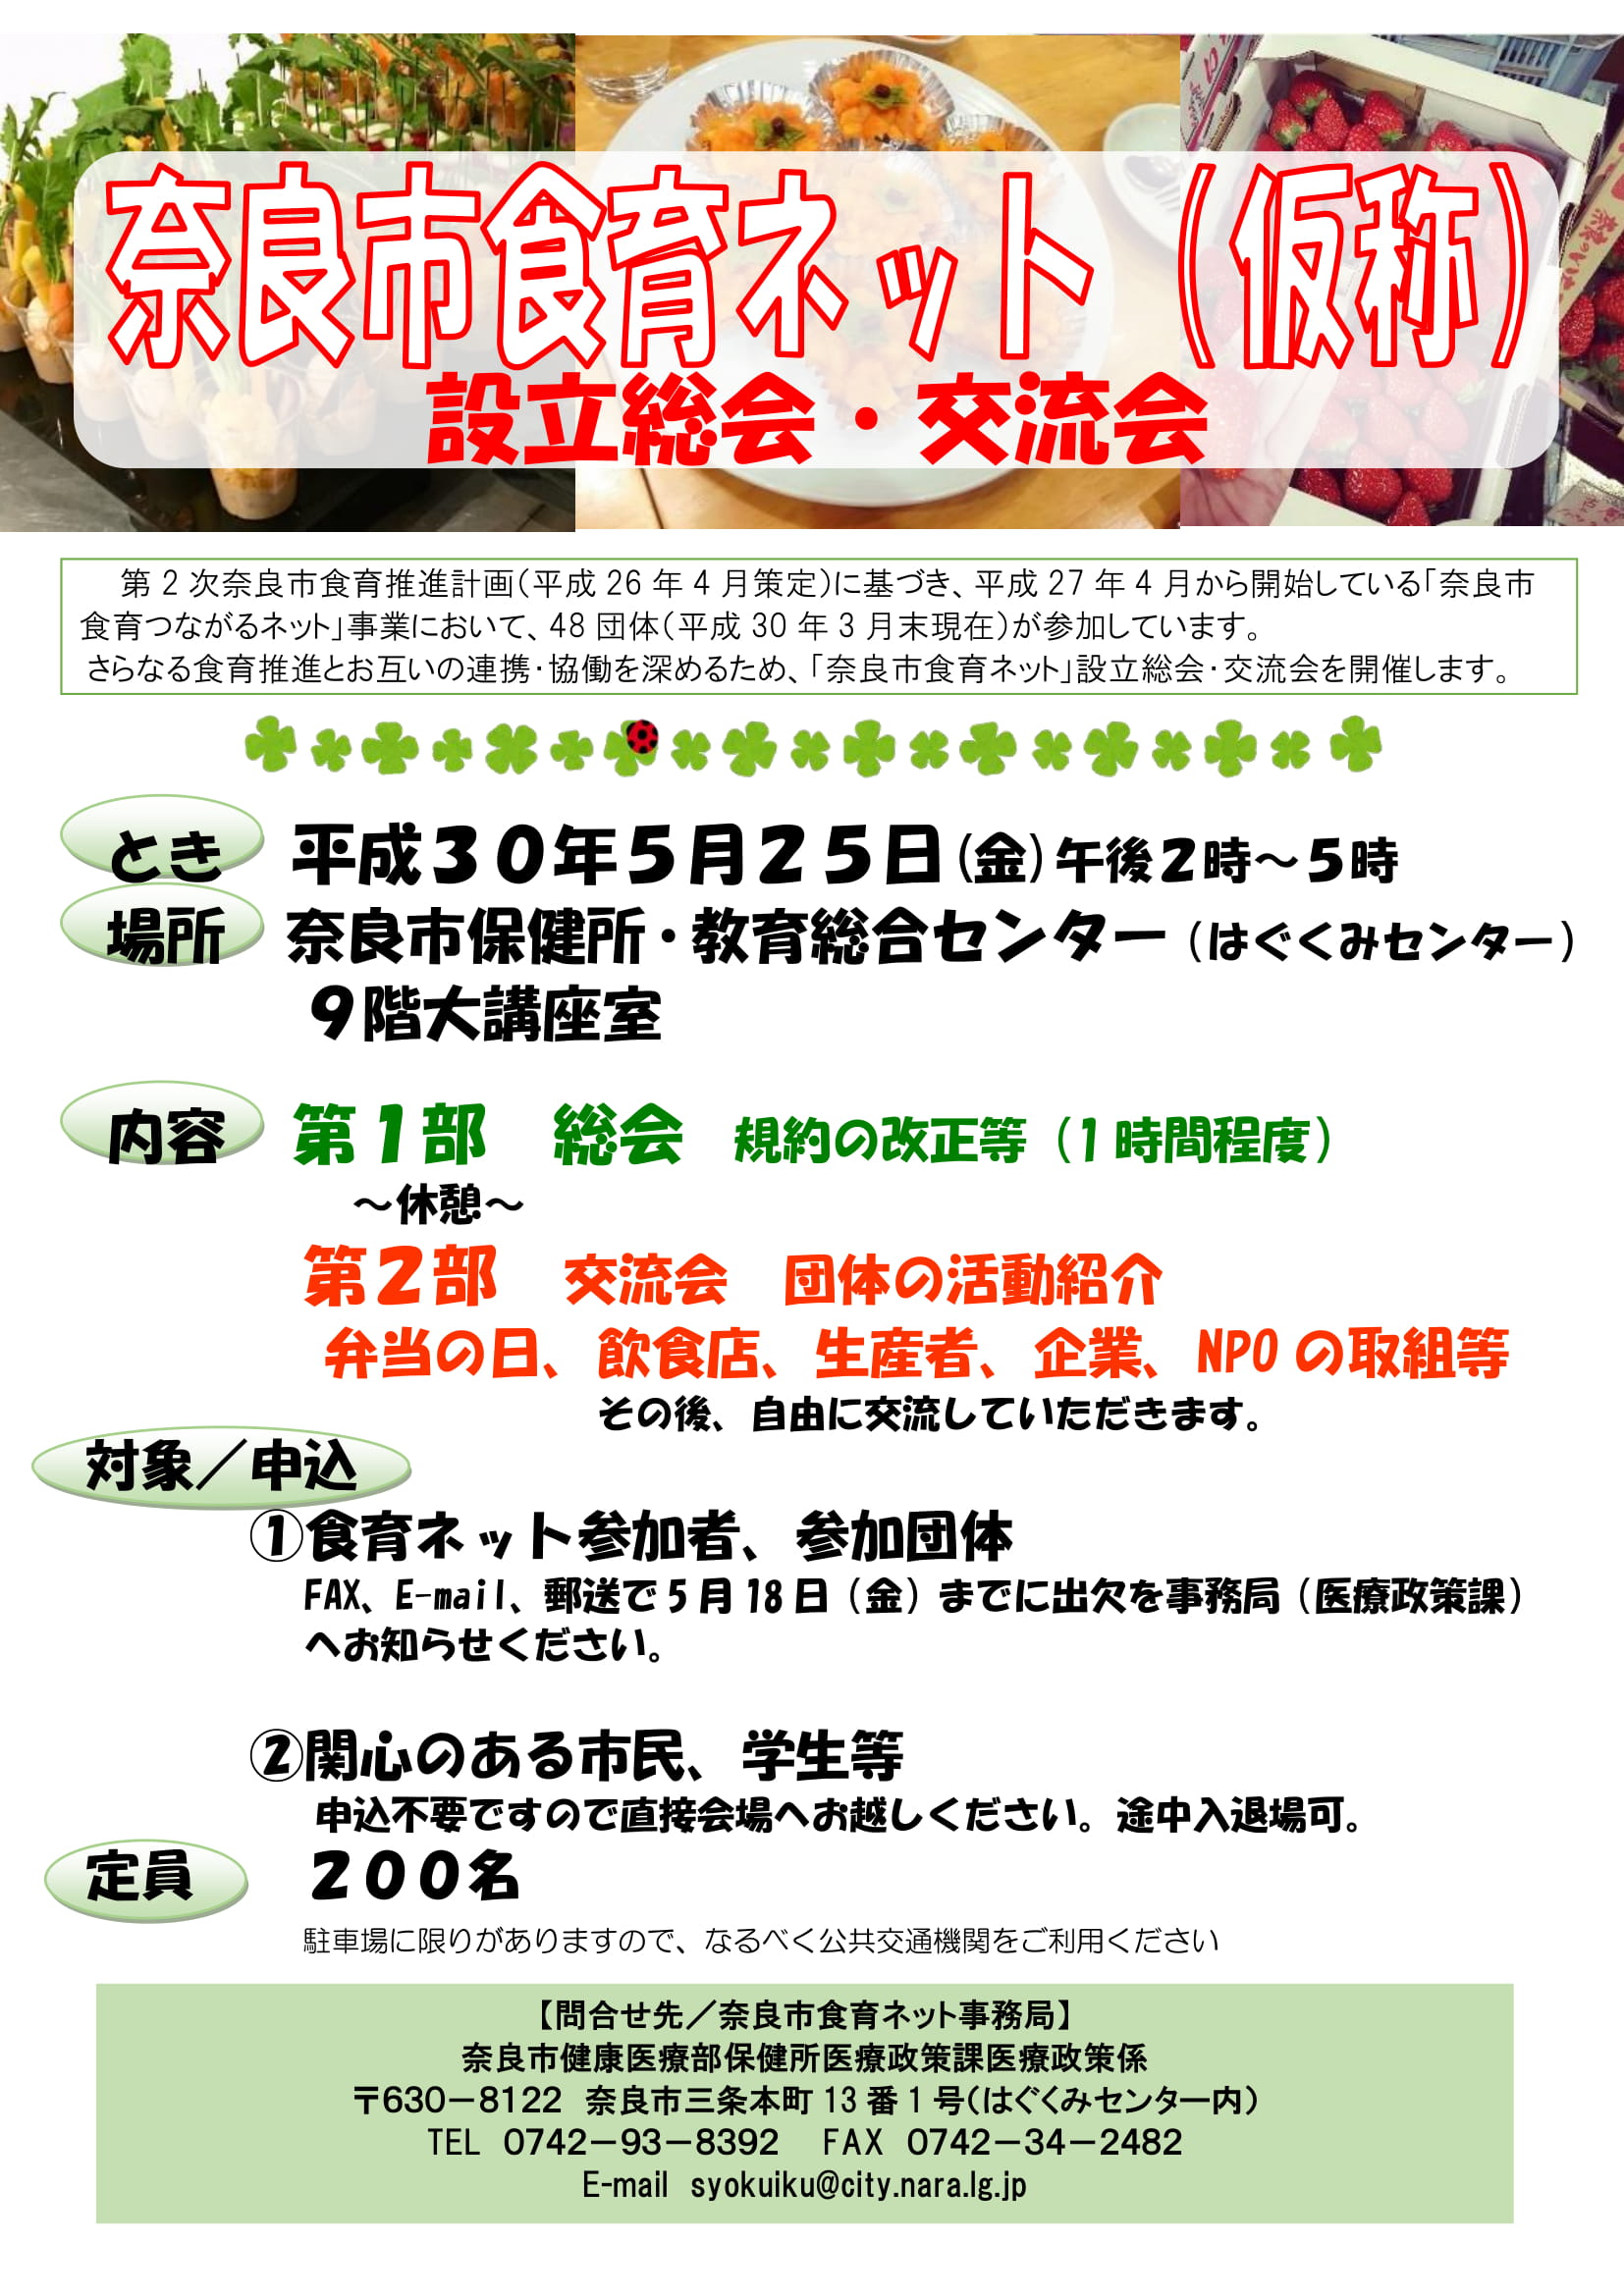 「奈良市食育推進会議」の農林水産省平成30年度食育活動表彰受賞について（平成30年5月18日発表）の画像２